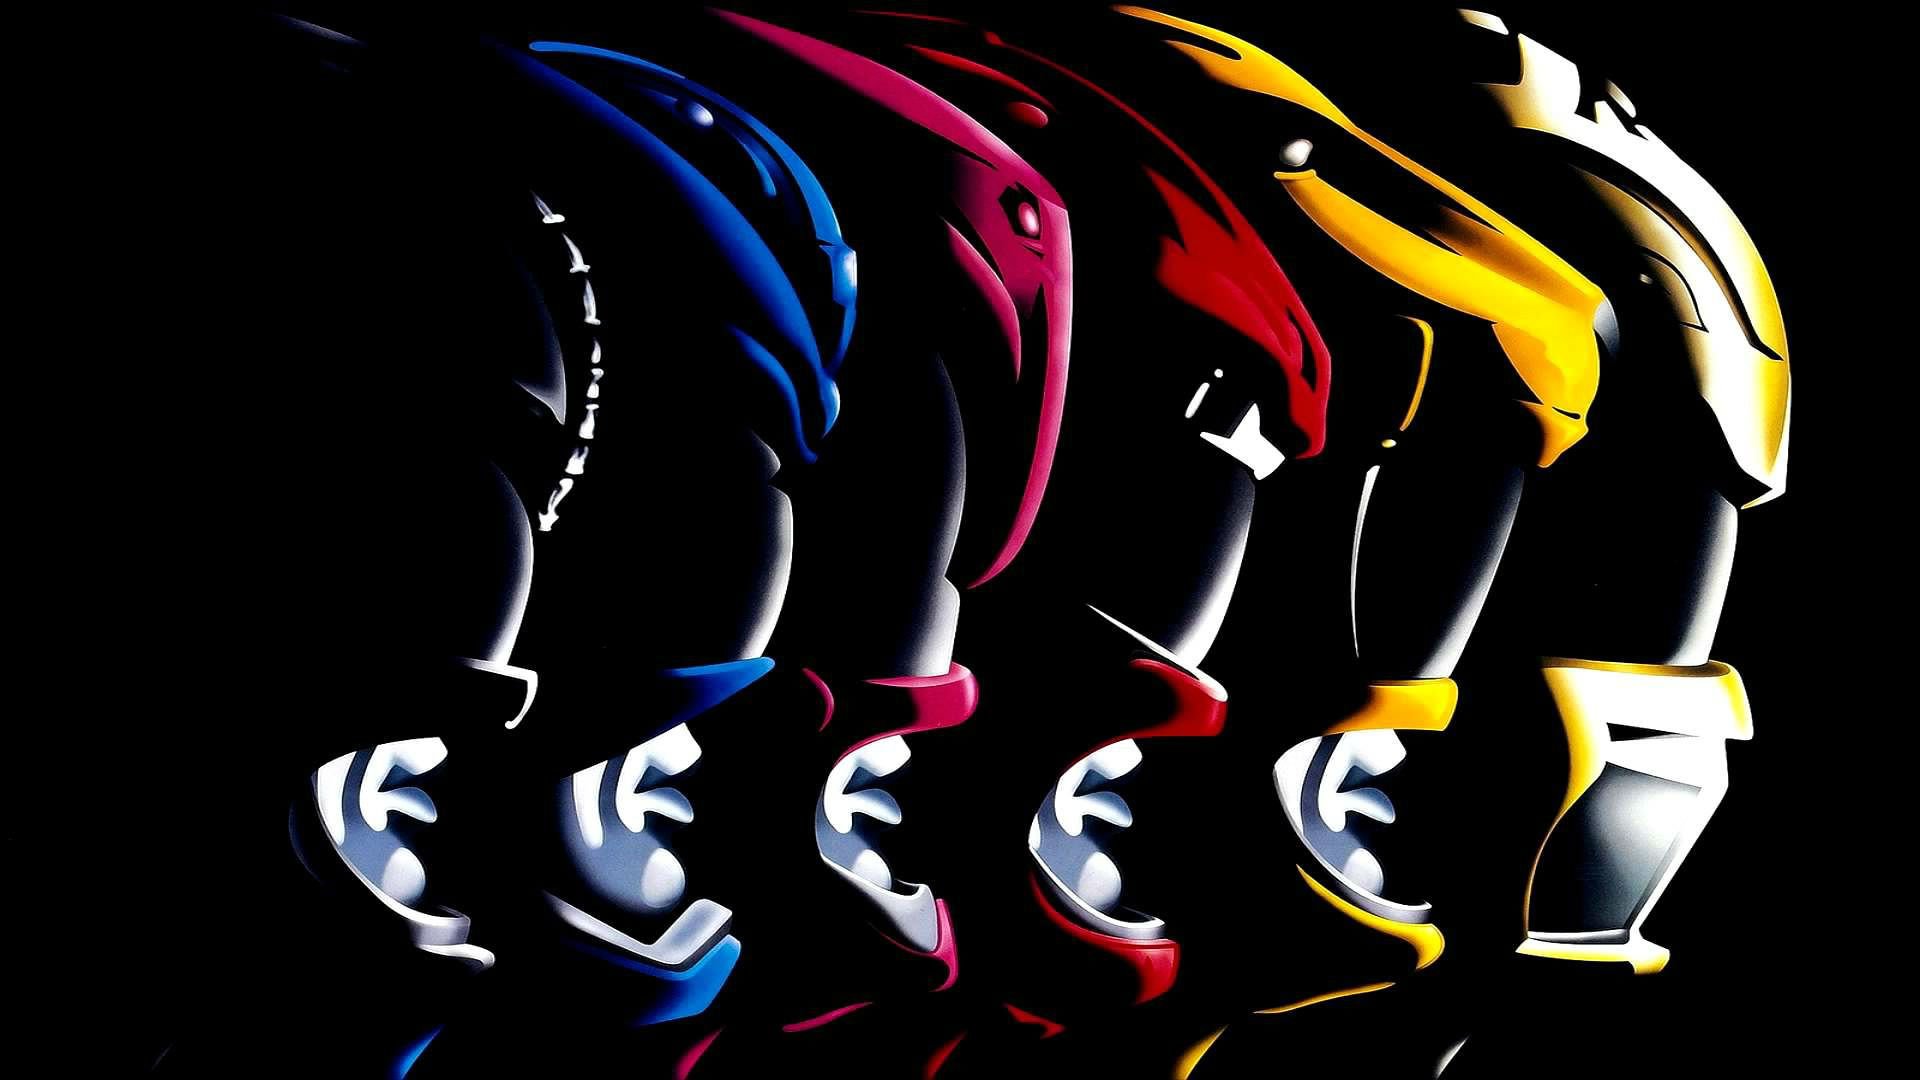 Descarga gratuita de fondo de pantalla para móvil de Series De Televisión, Power Rangers.